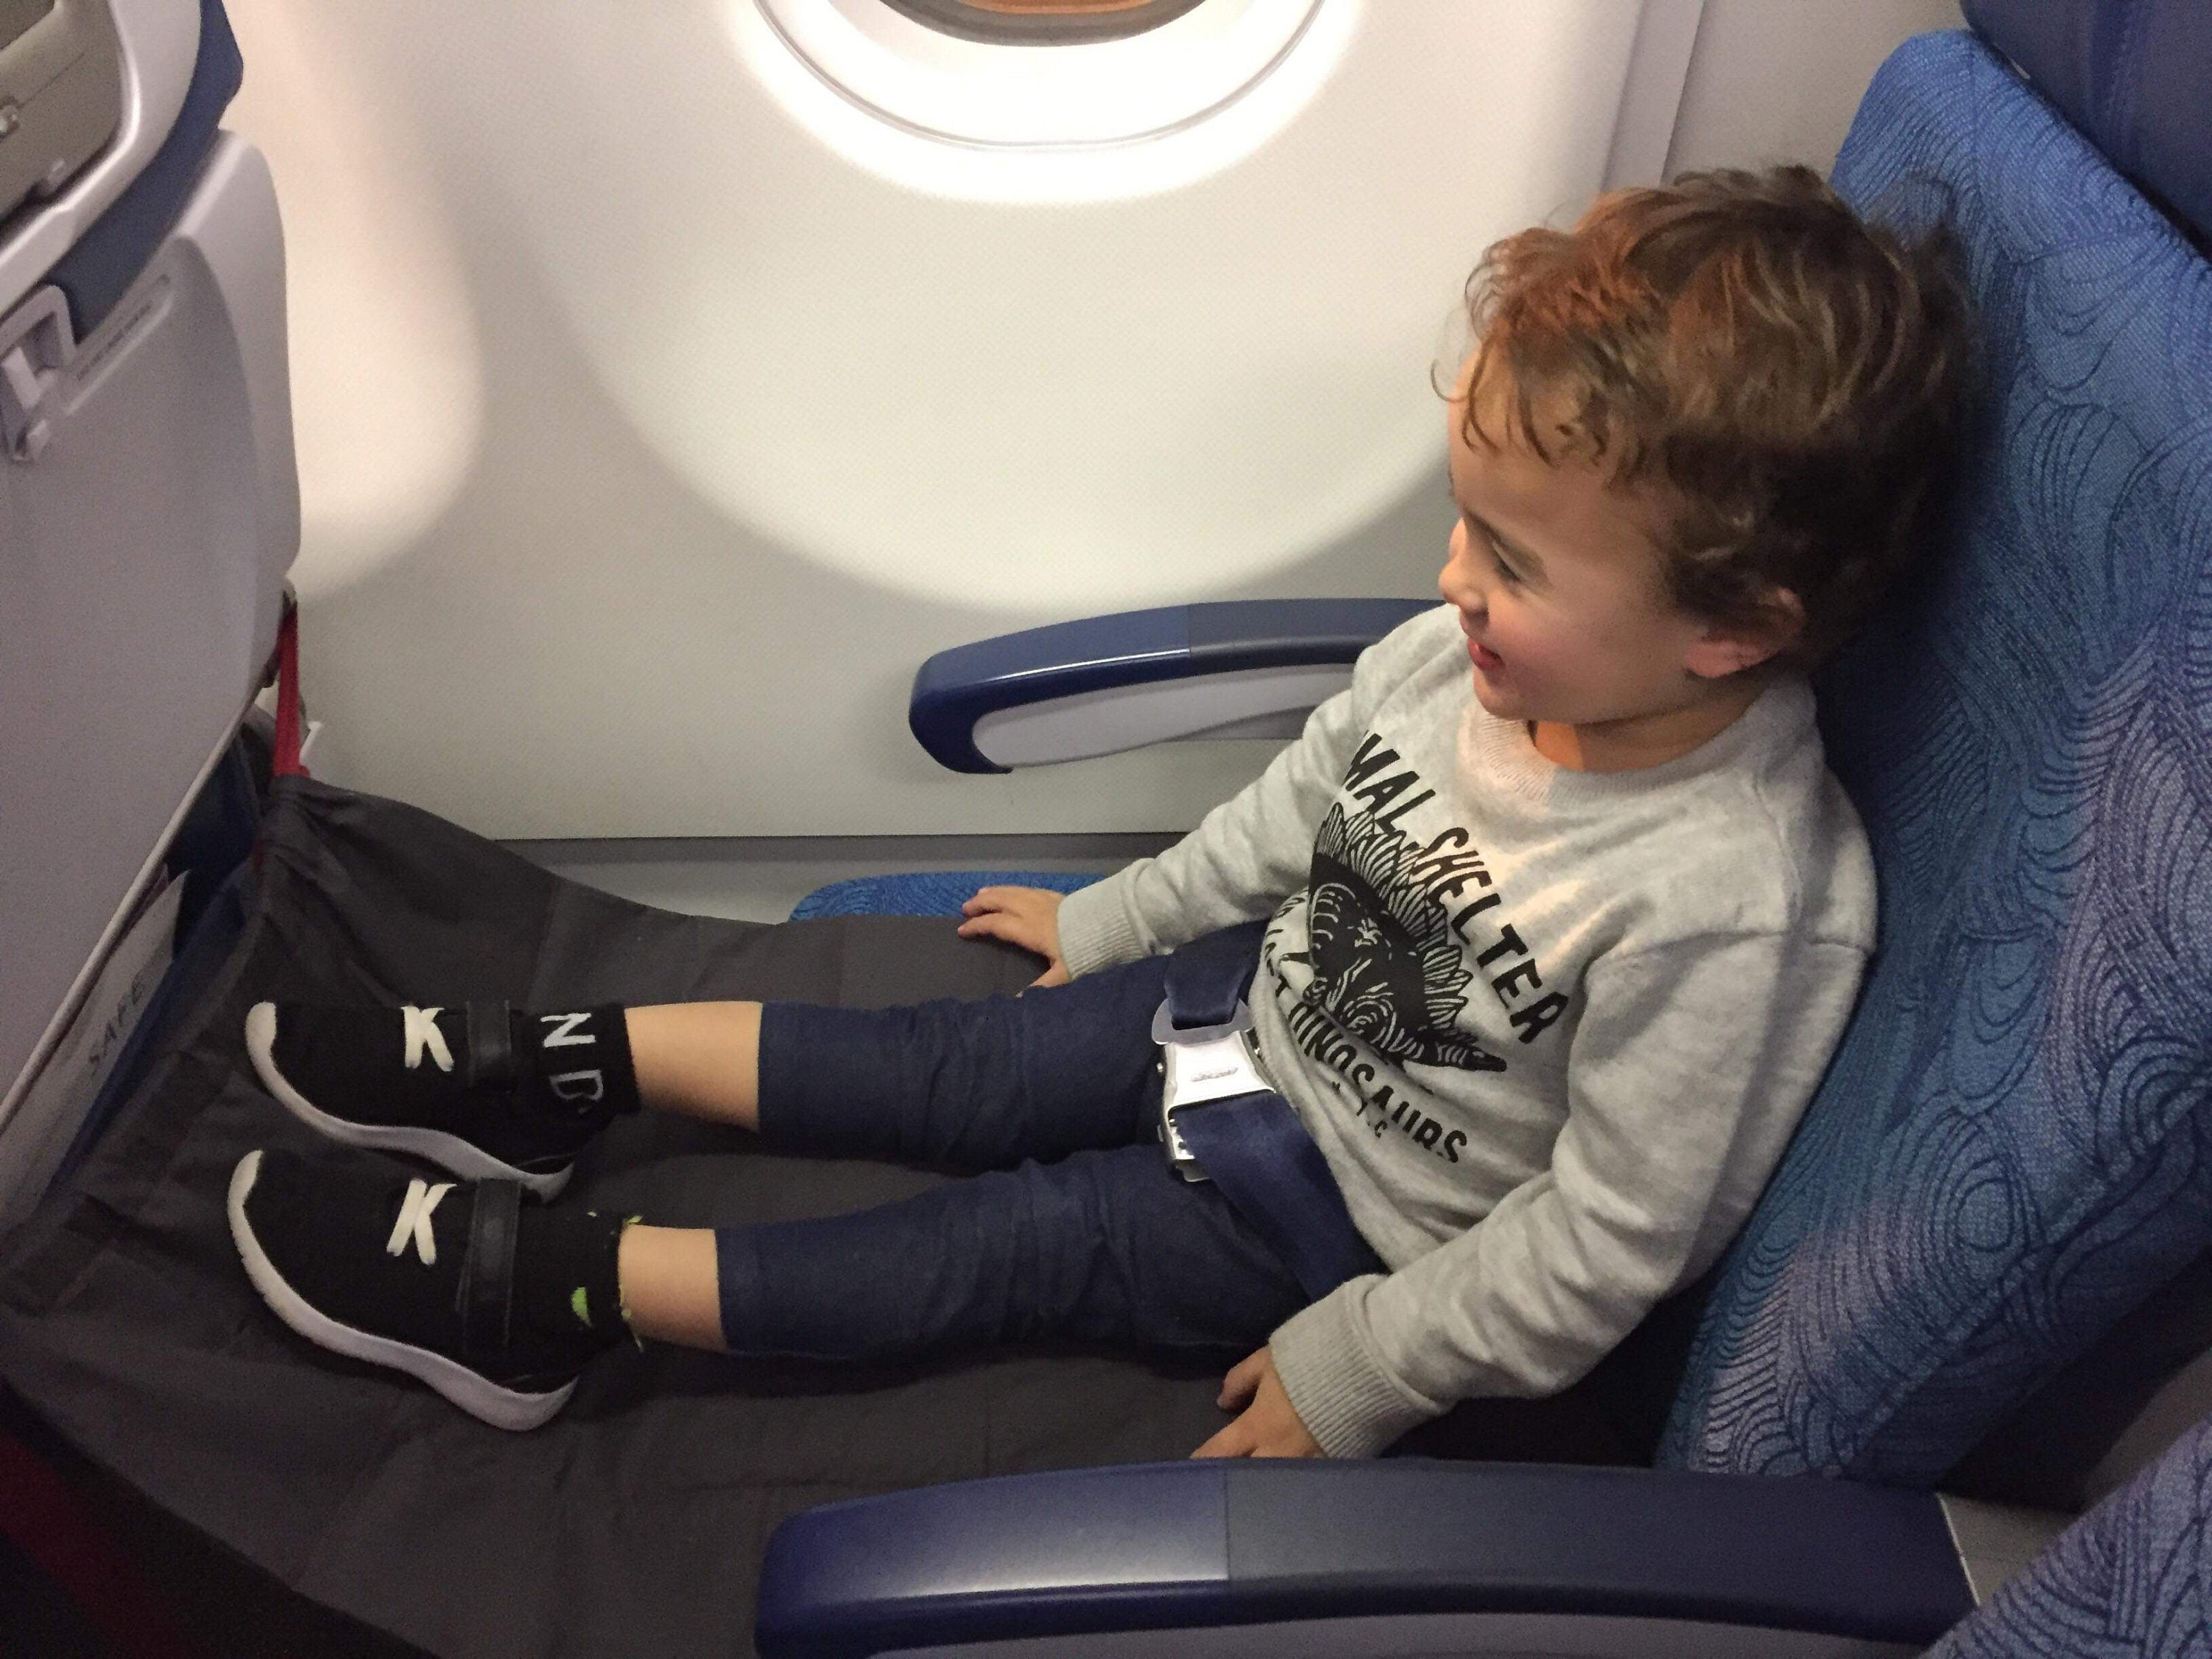 Siège/Lit de voyage gonflable pour bébé en avion Air Traveller